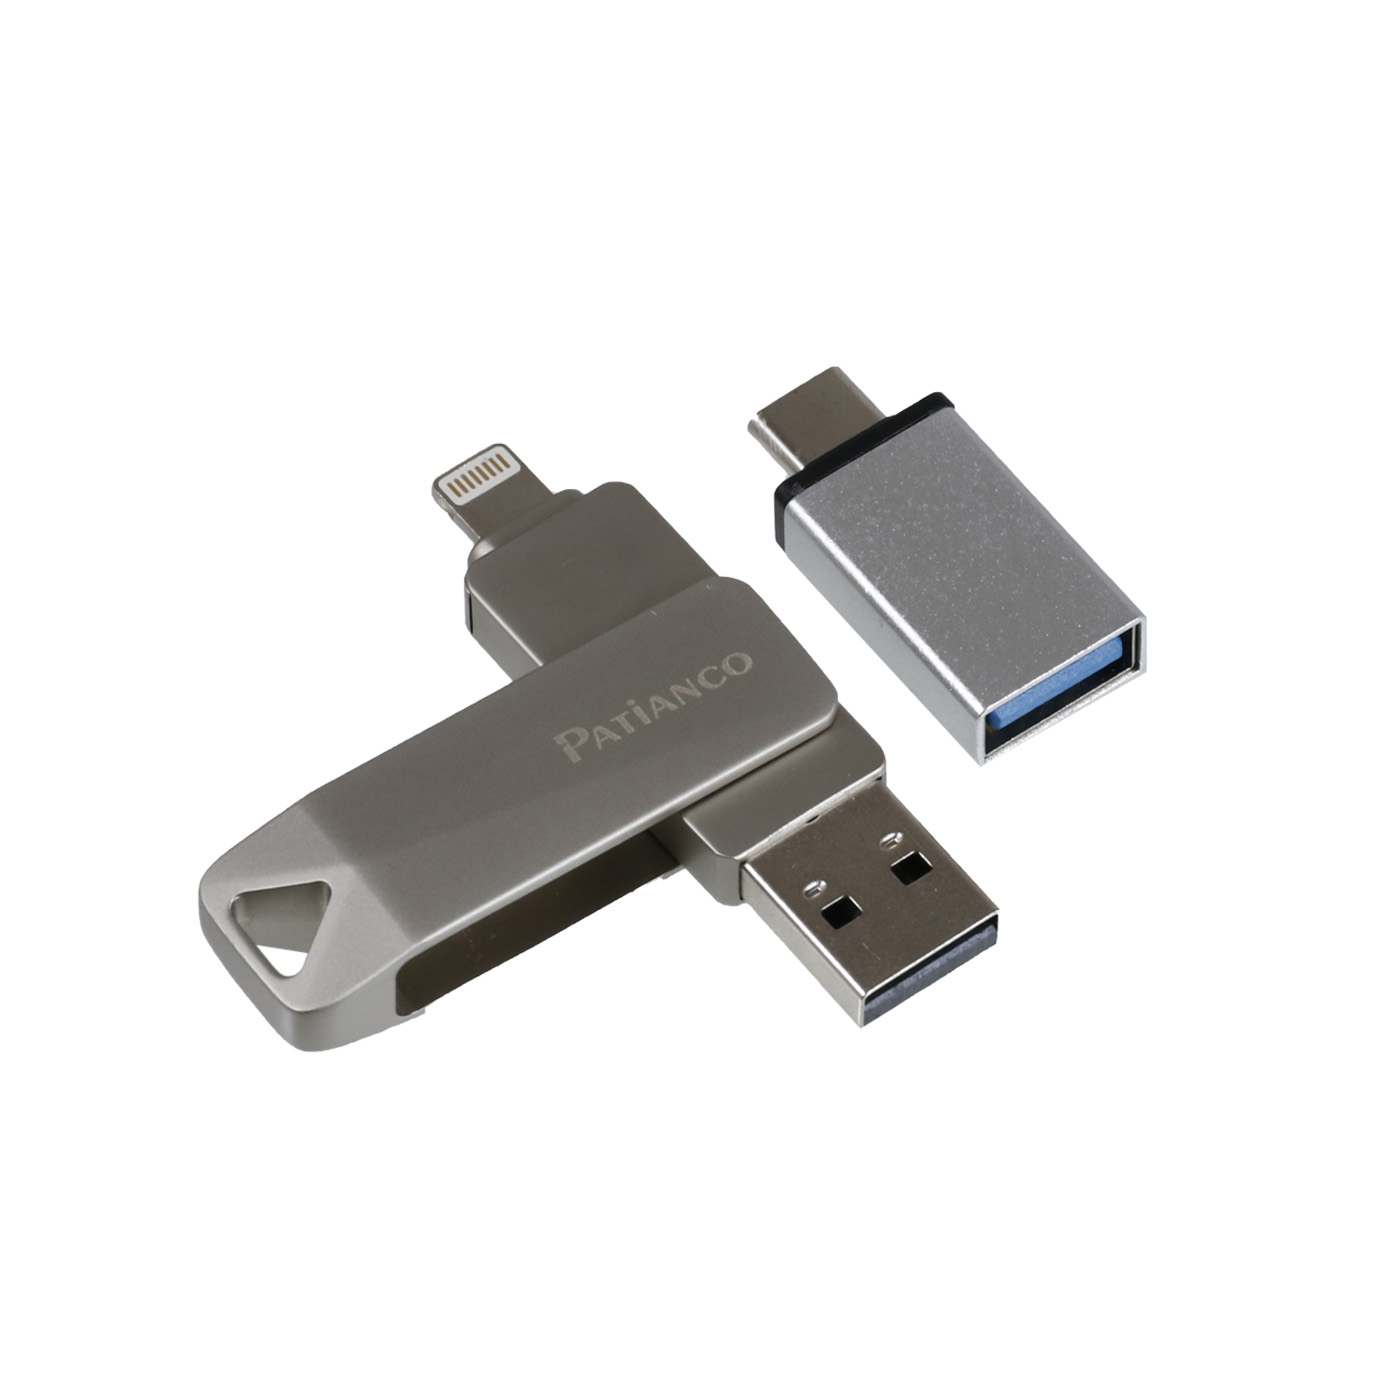 USBメモリ イエロー 32GB USB2.0 USB キャップレス フラッシュメモリ 回転式 おしゃれ コンパクト  ((S